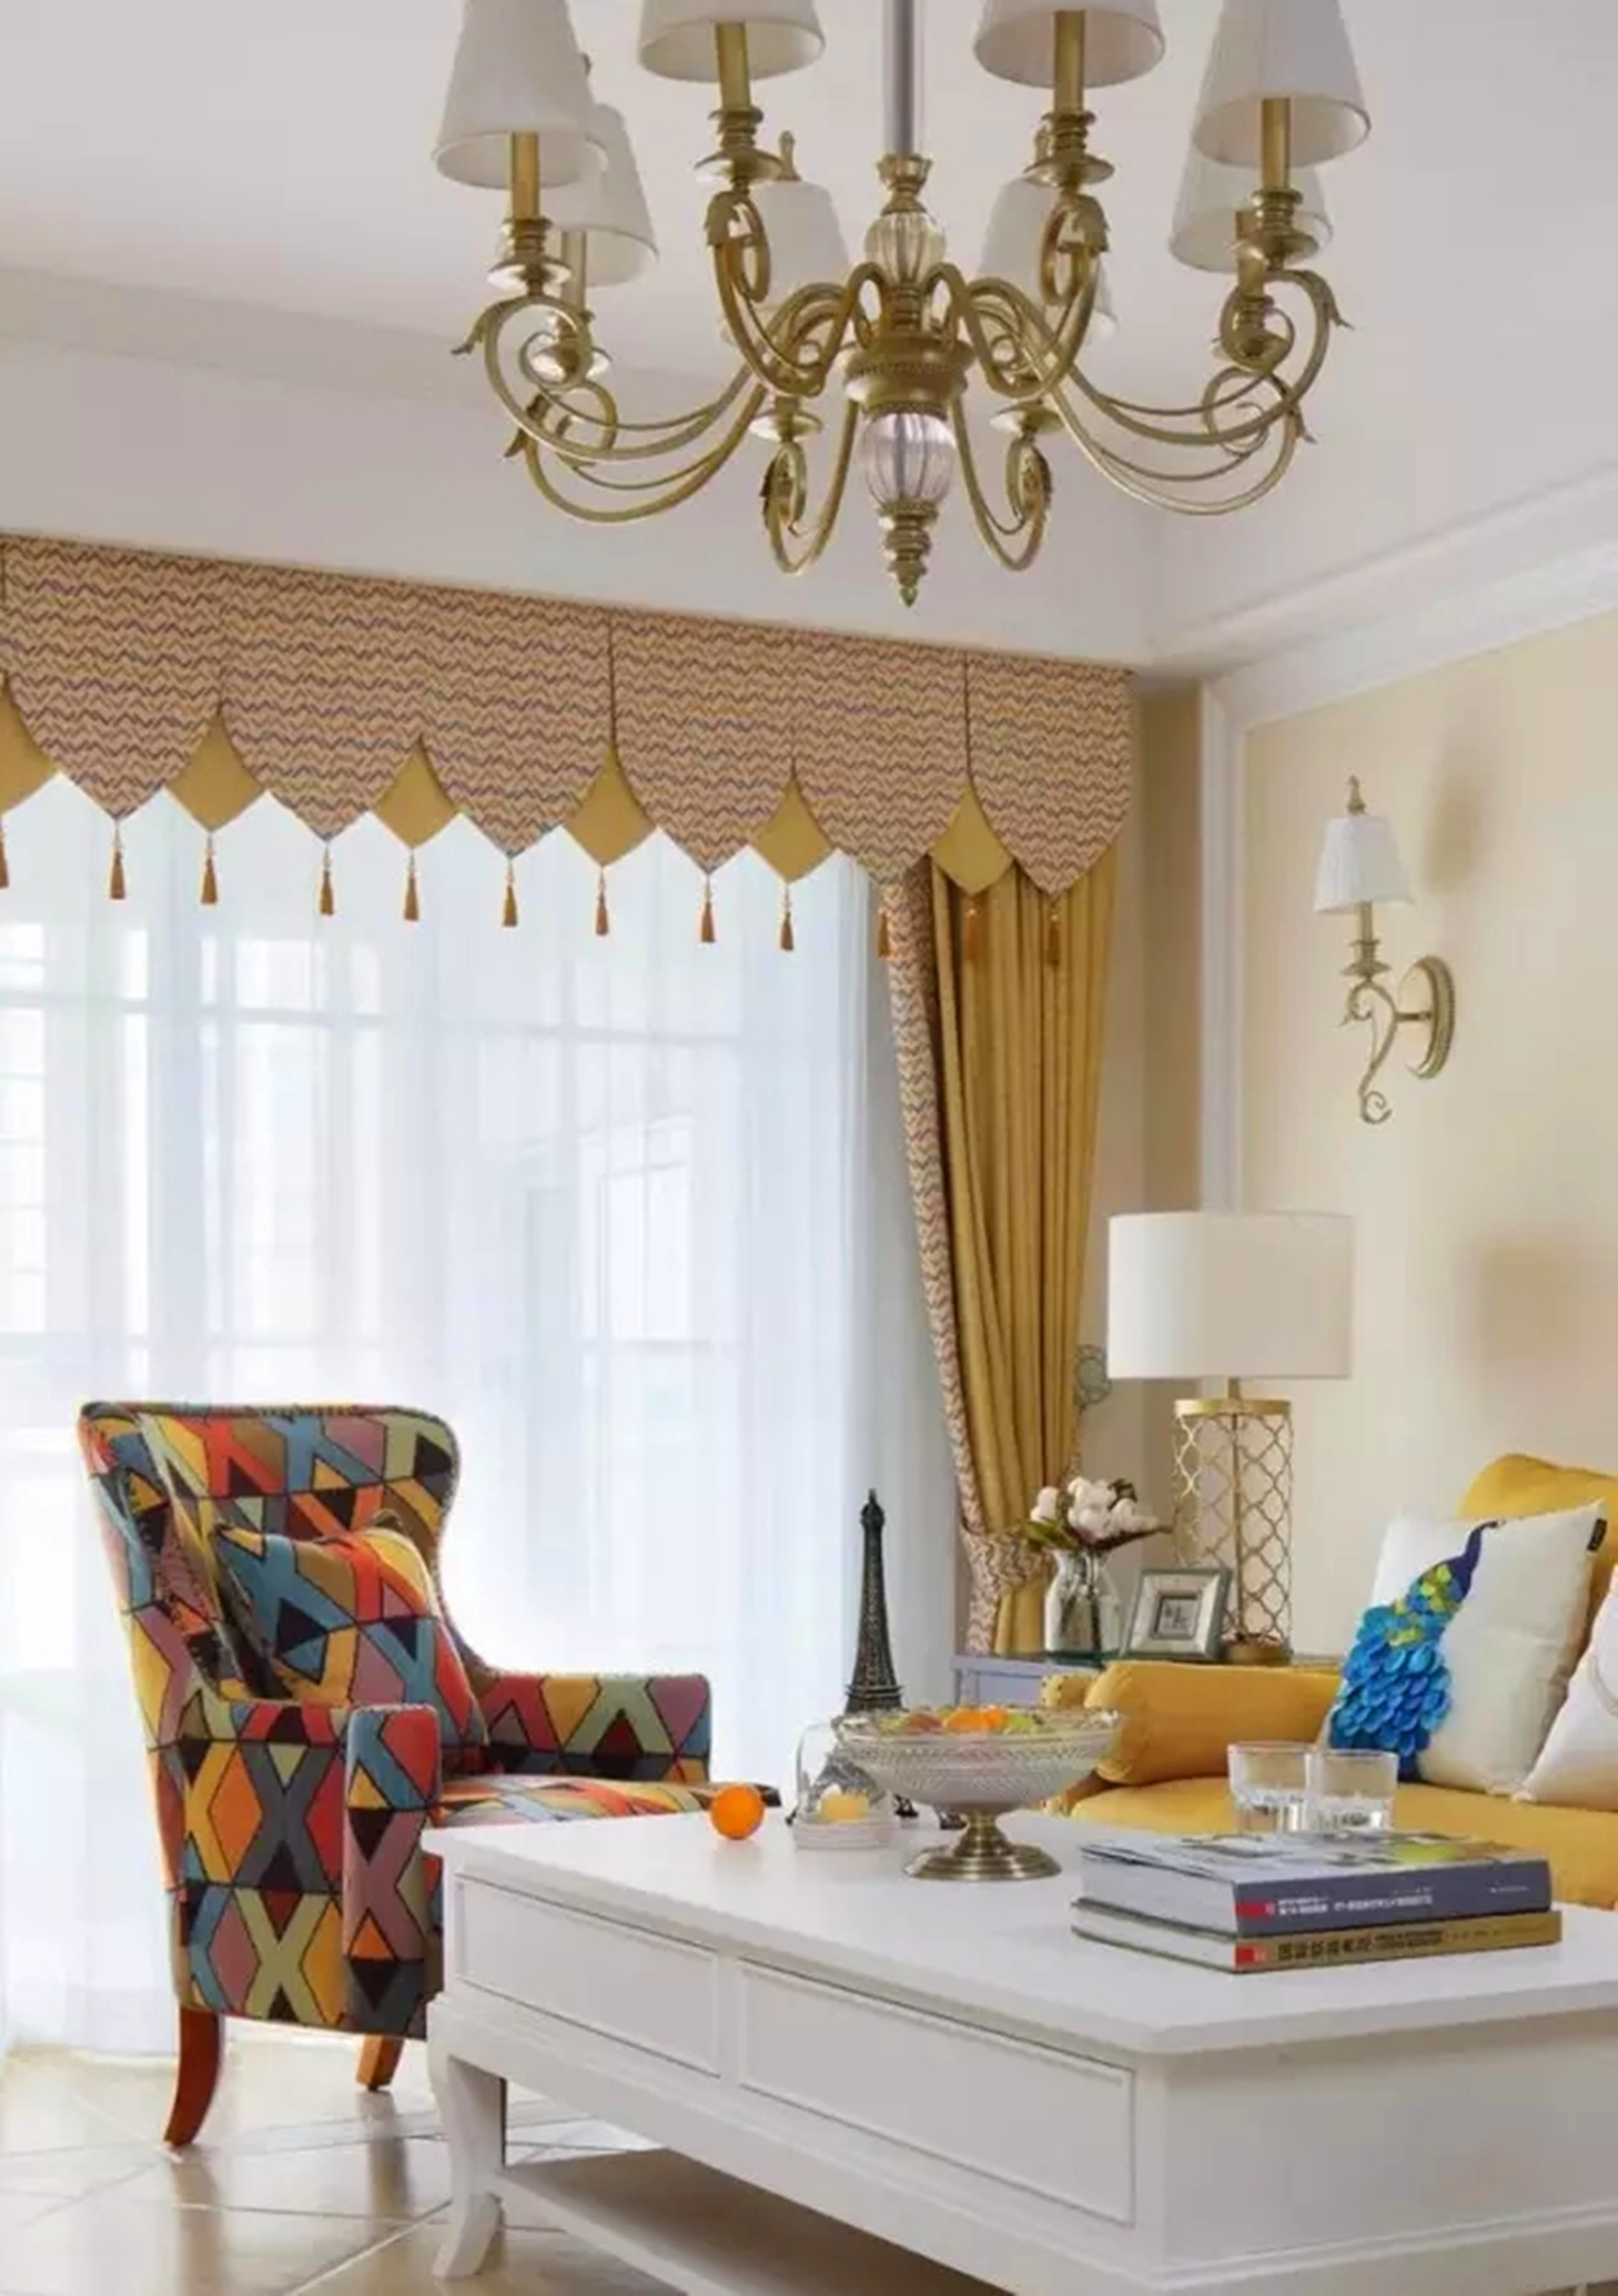 混搭 欧式 美式 四居 客厅图片来自高度国际装饰宋增会在长楹天街小区140平美式混搭的分享